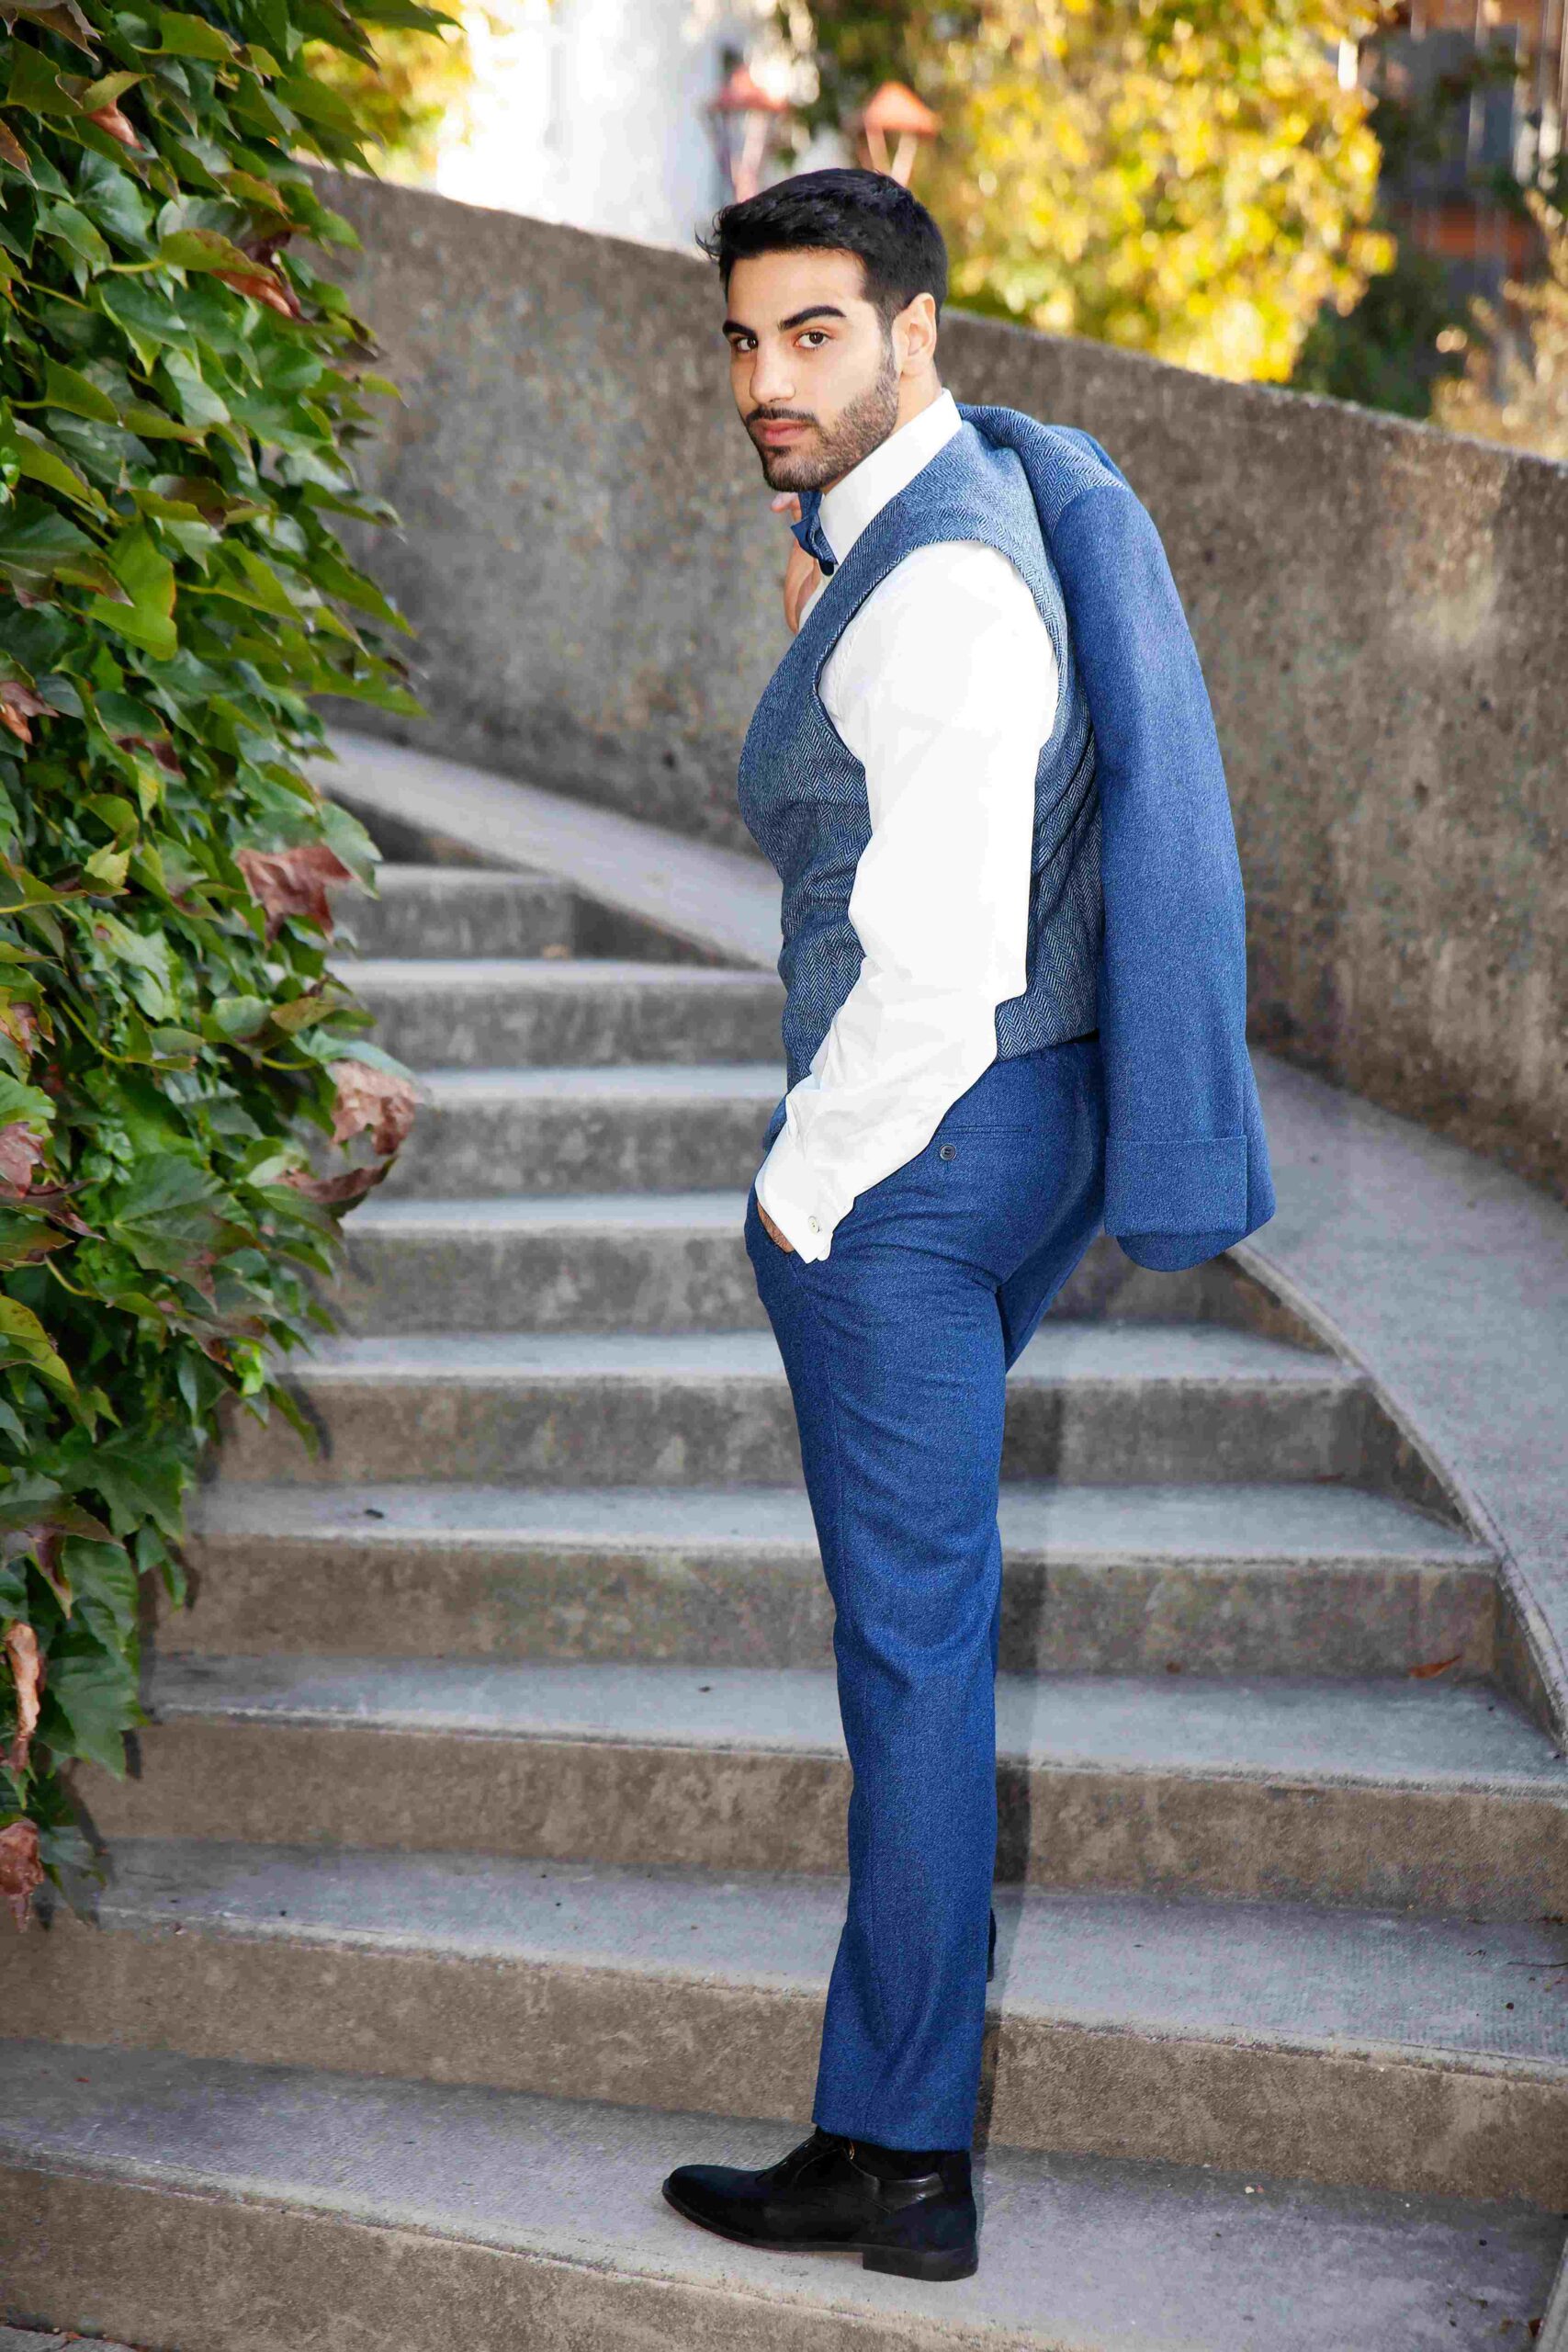 Costume Digne costume de mariage Grenoble couleur bleu en tweed anglais